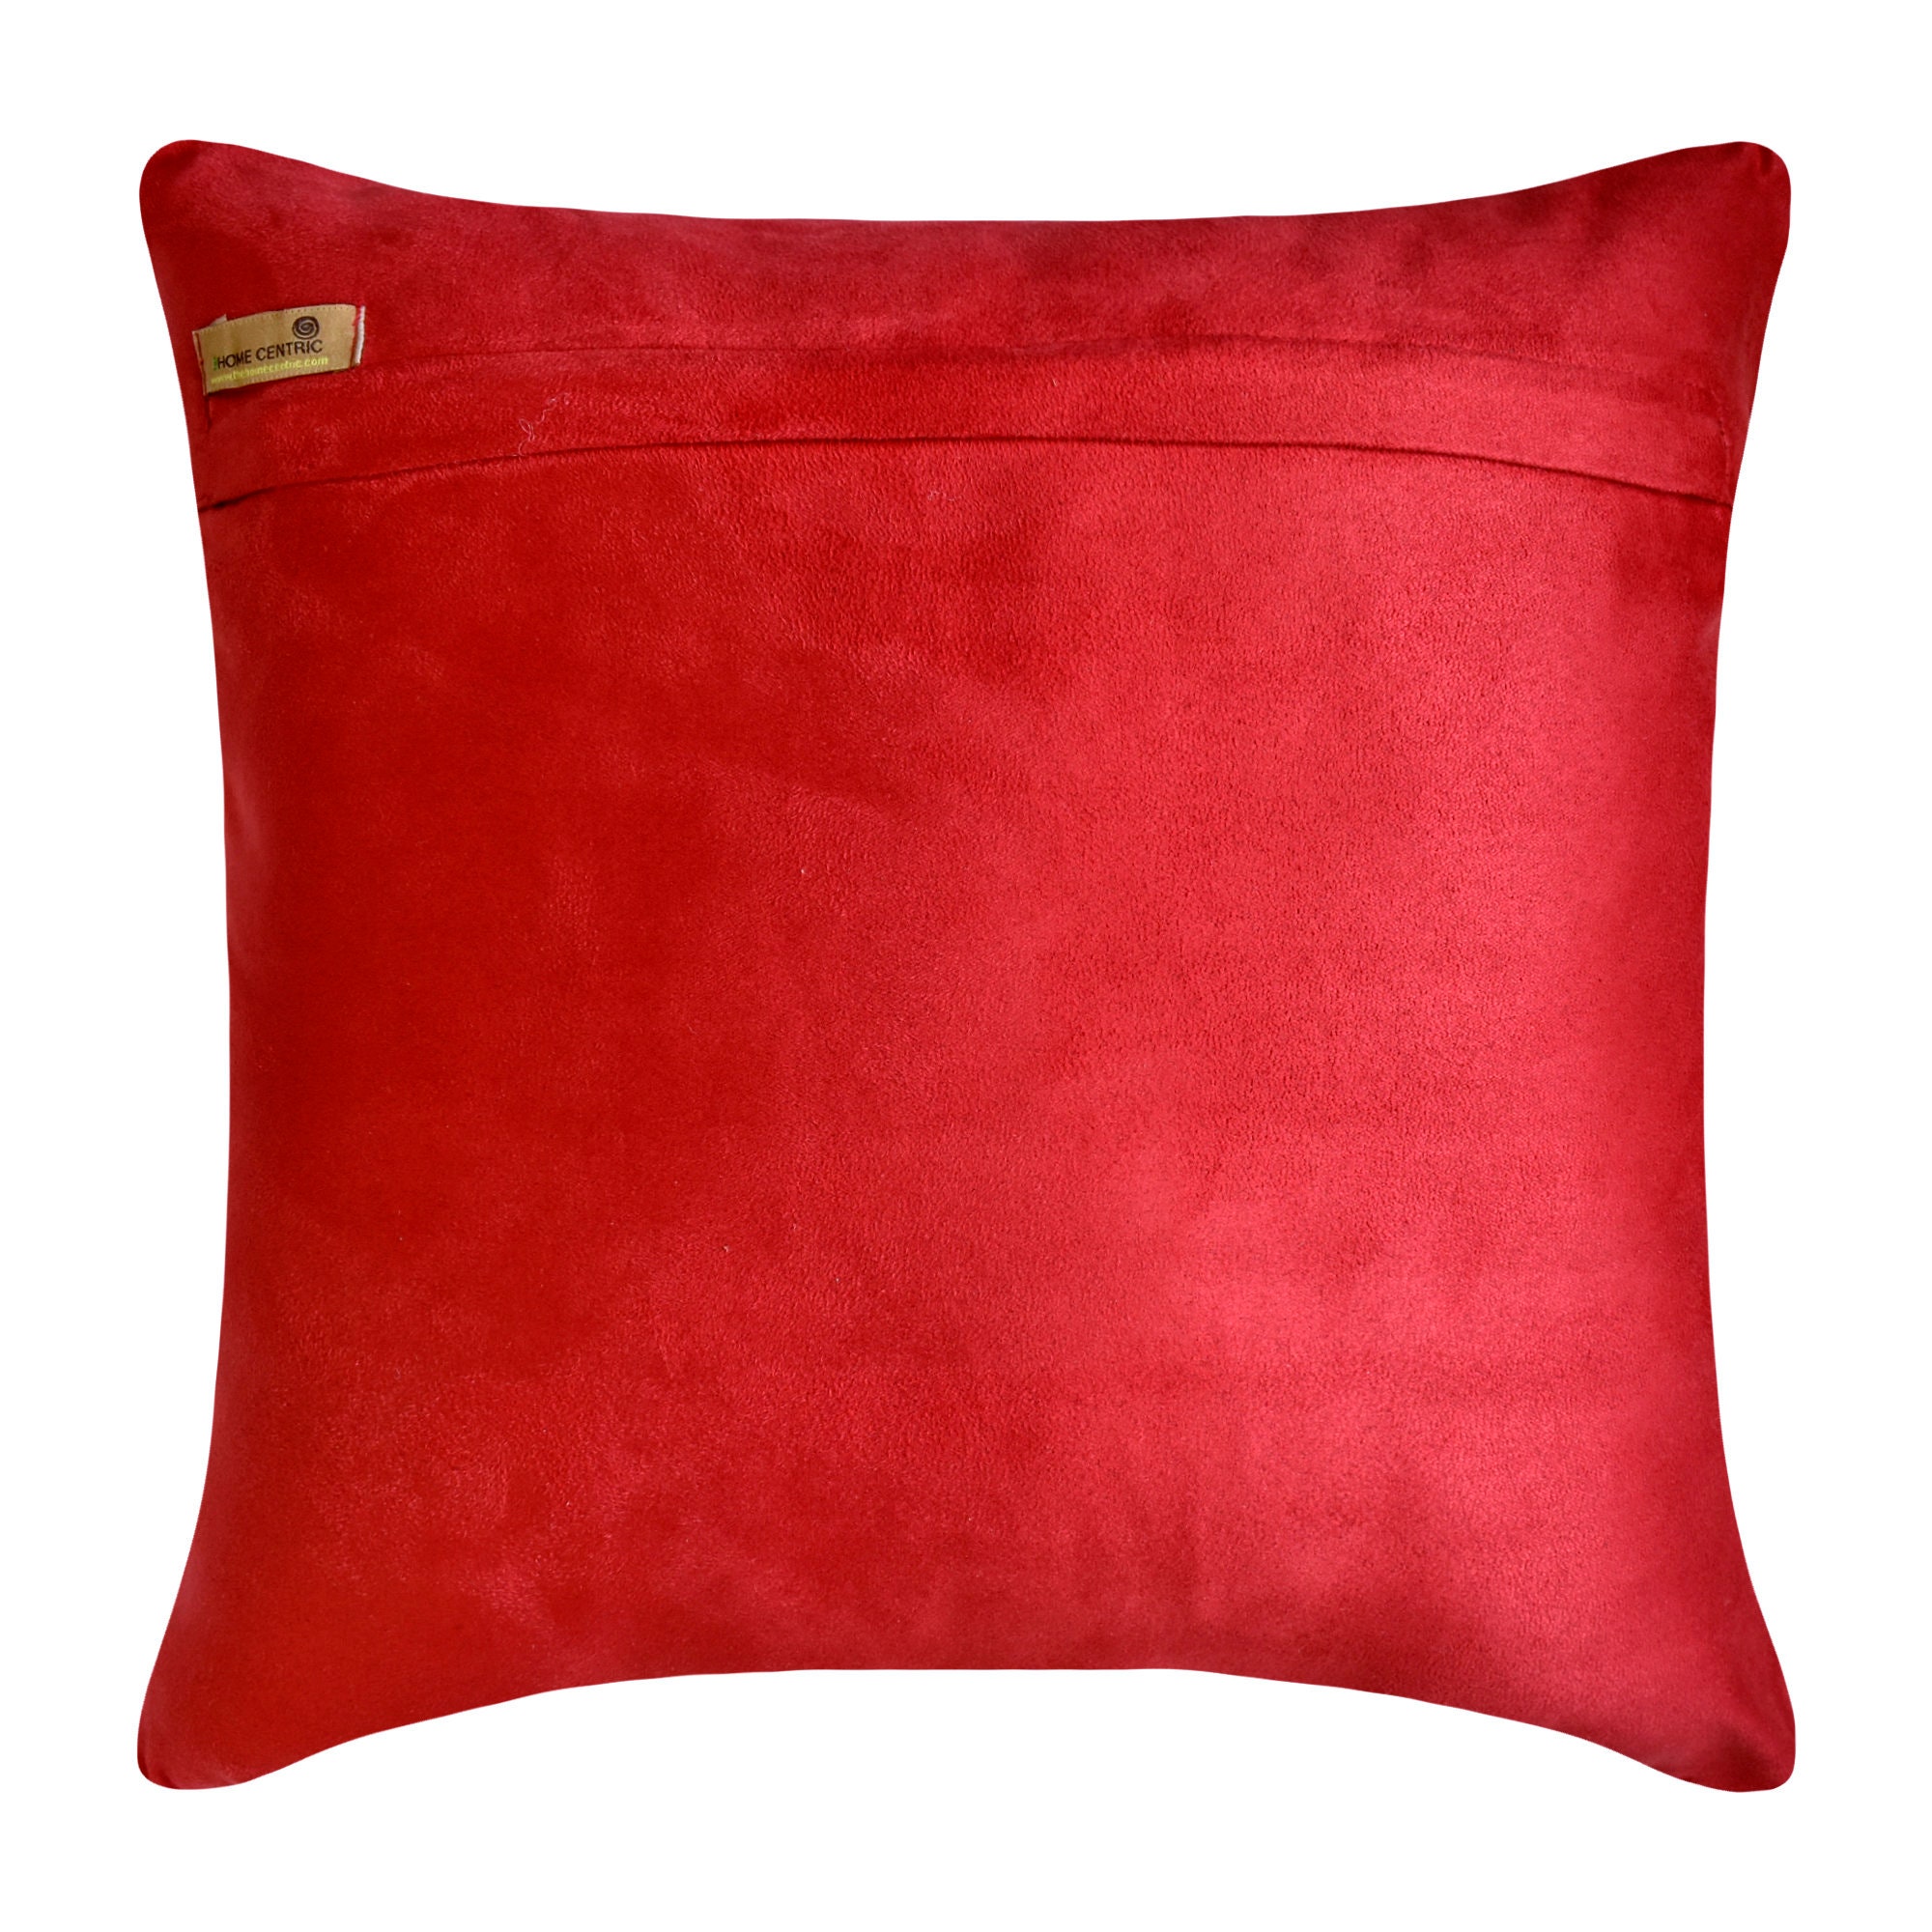 Sofakissen Rot Groß – aus edlem Premium Leder